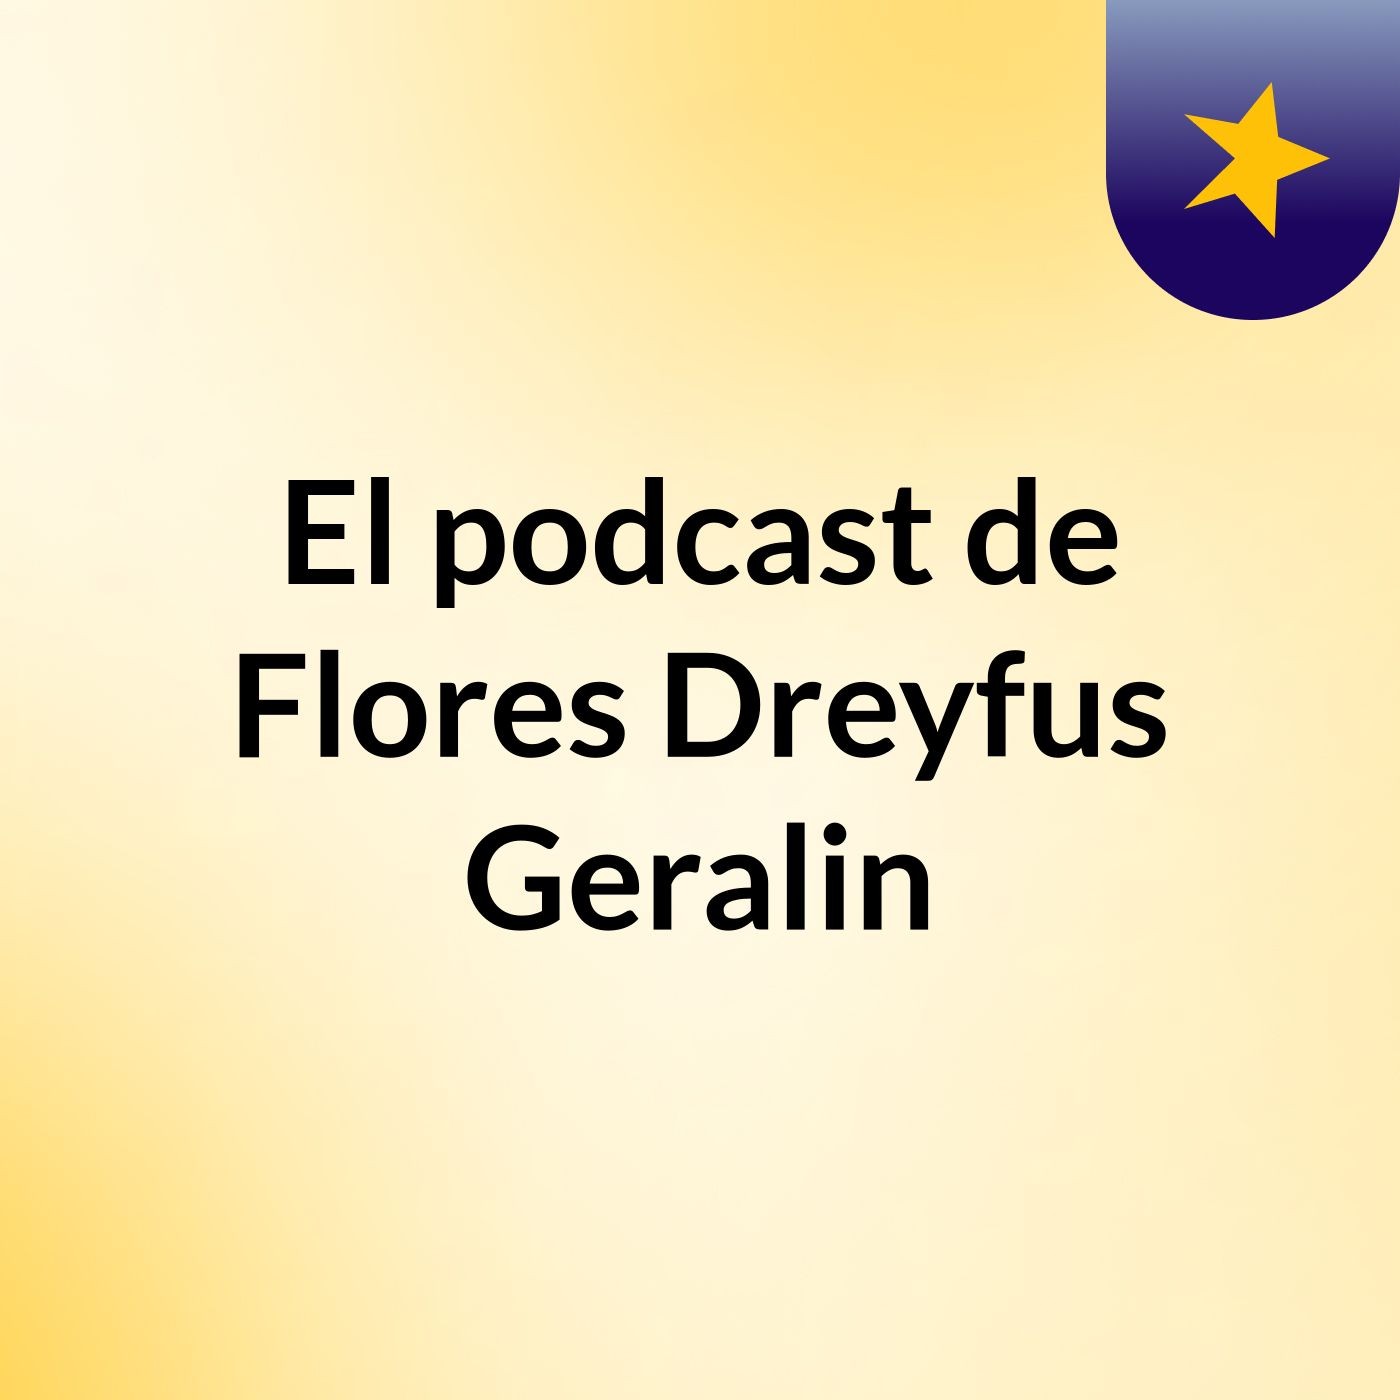 El podcast de Flores Dreyfus Geralin